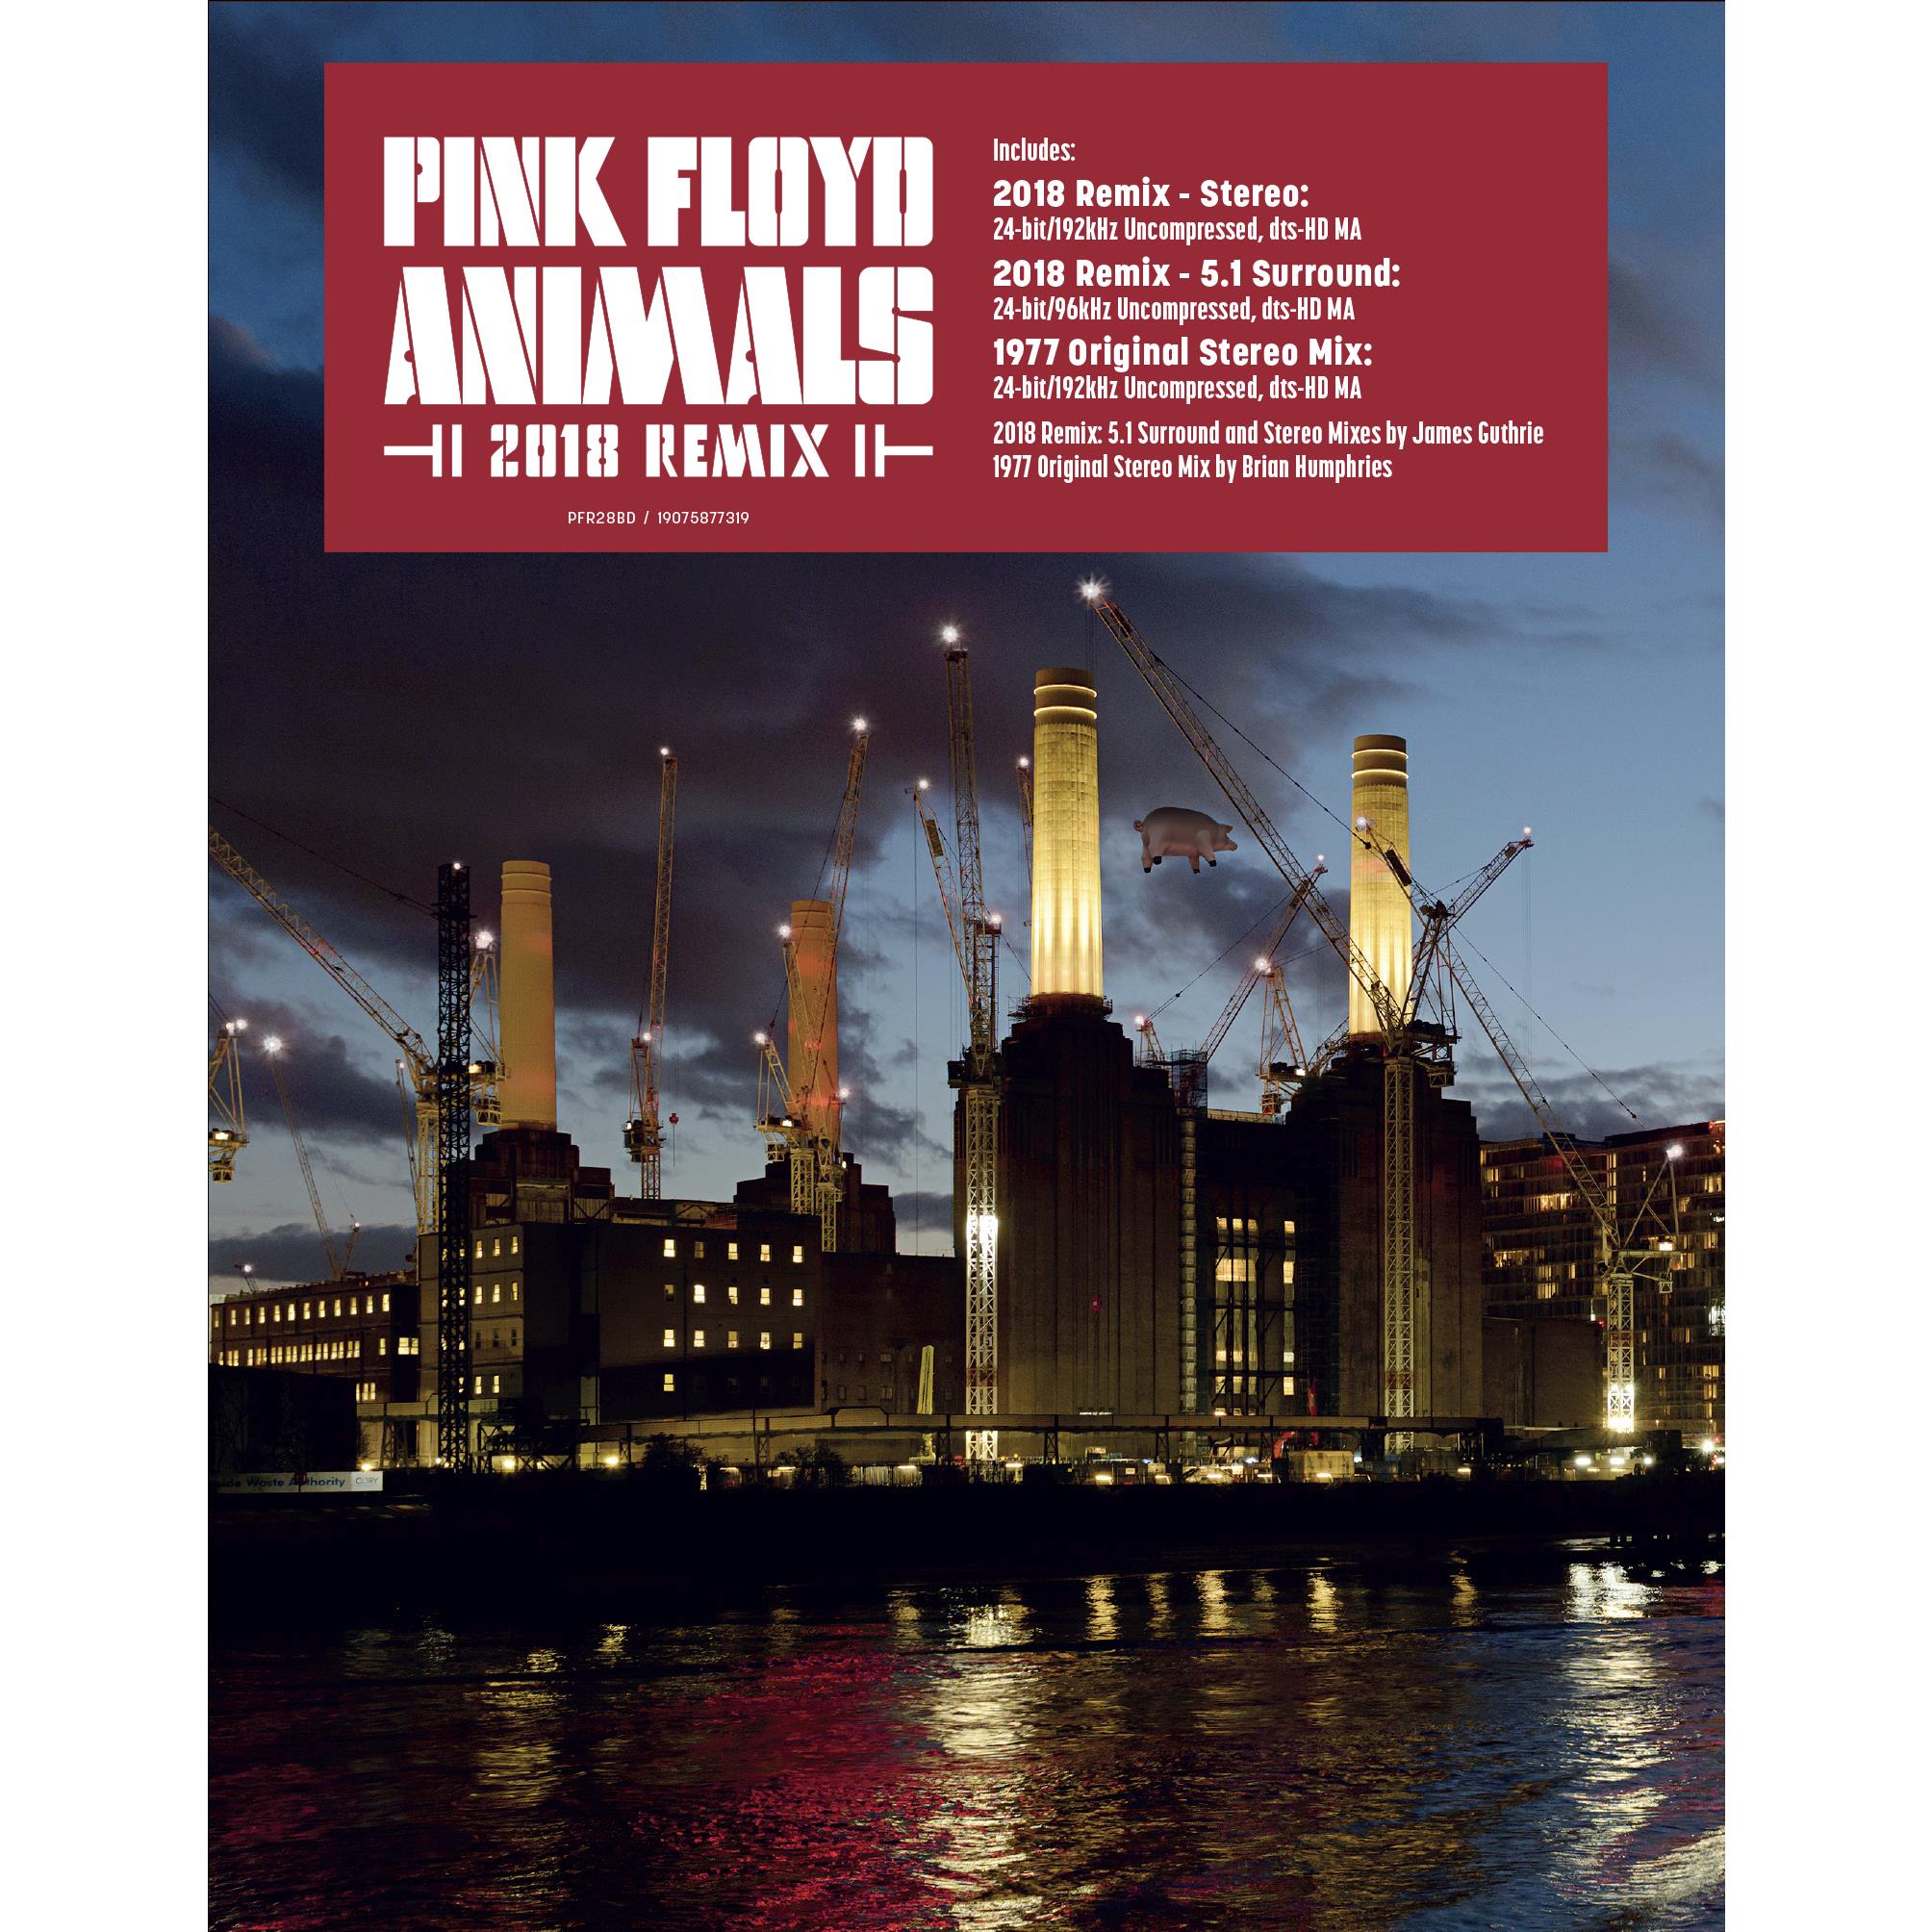 pink floyd - animals 2018 remix